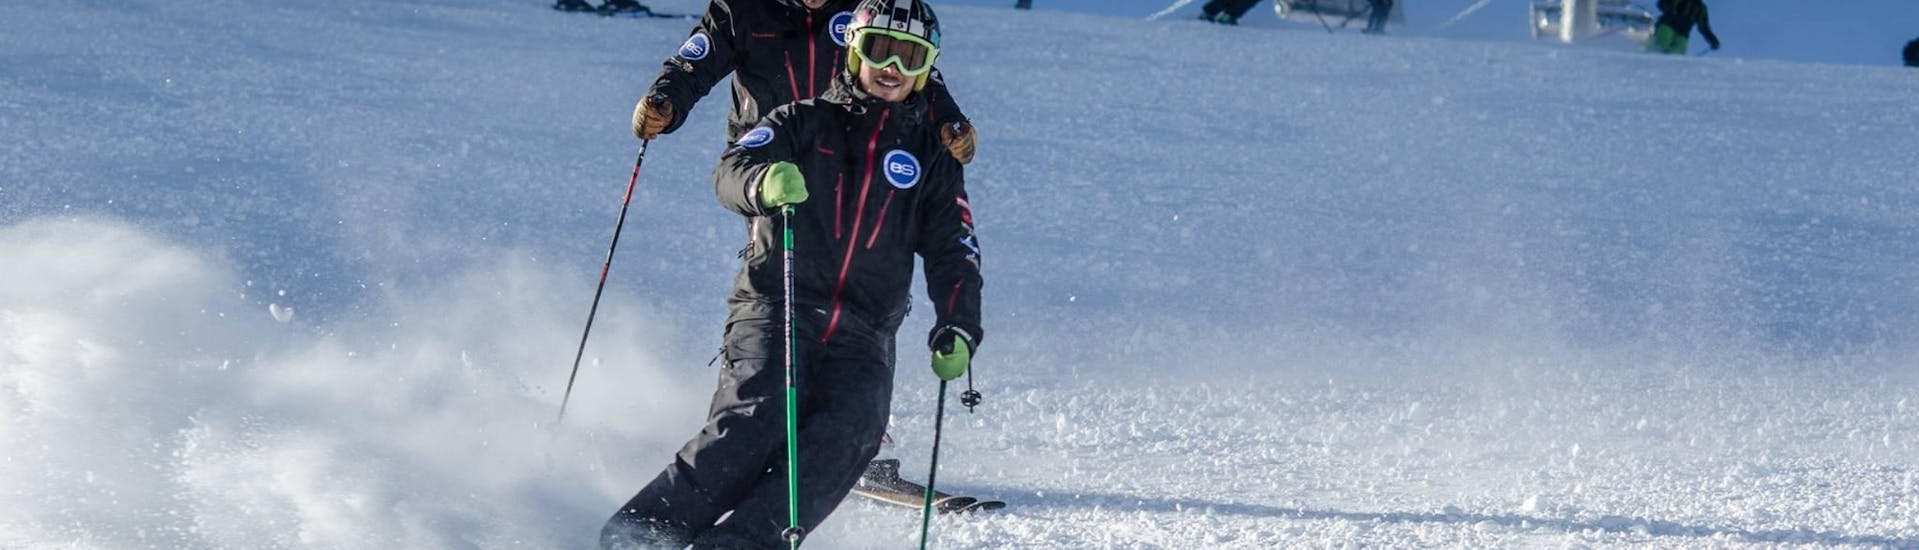 Lezioni di sci per ragazzi "Freeski" (11-17 anni) - Avanzati.